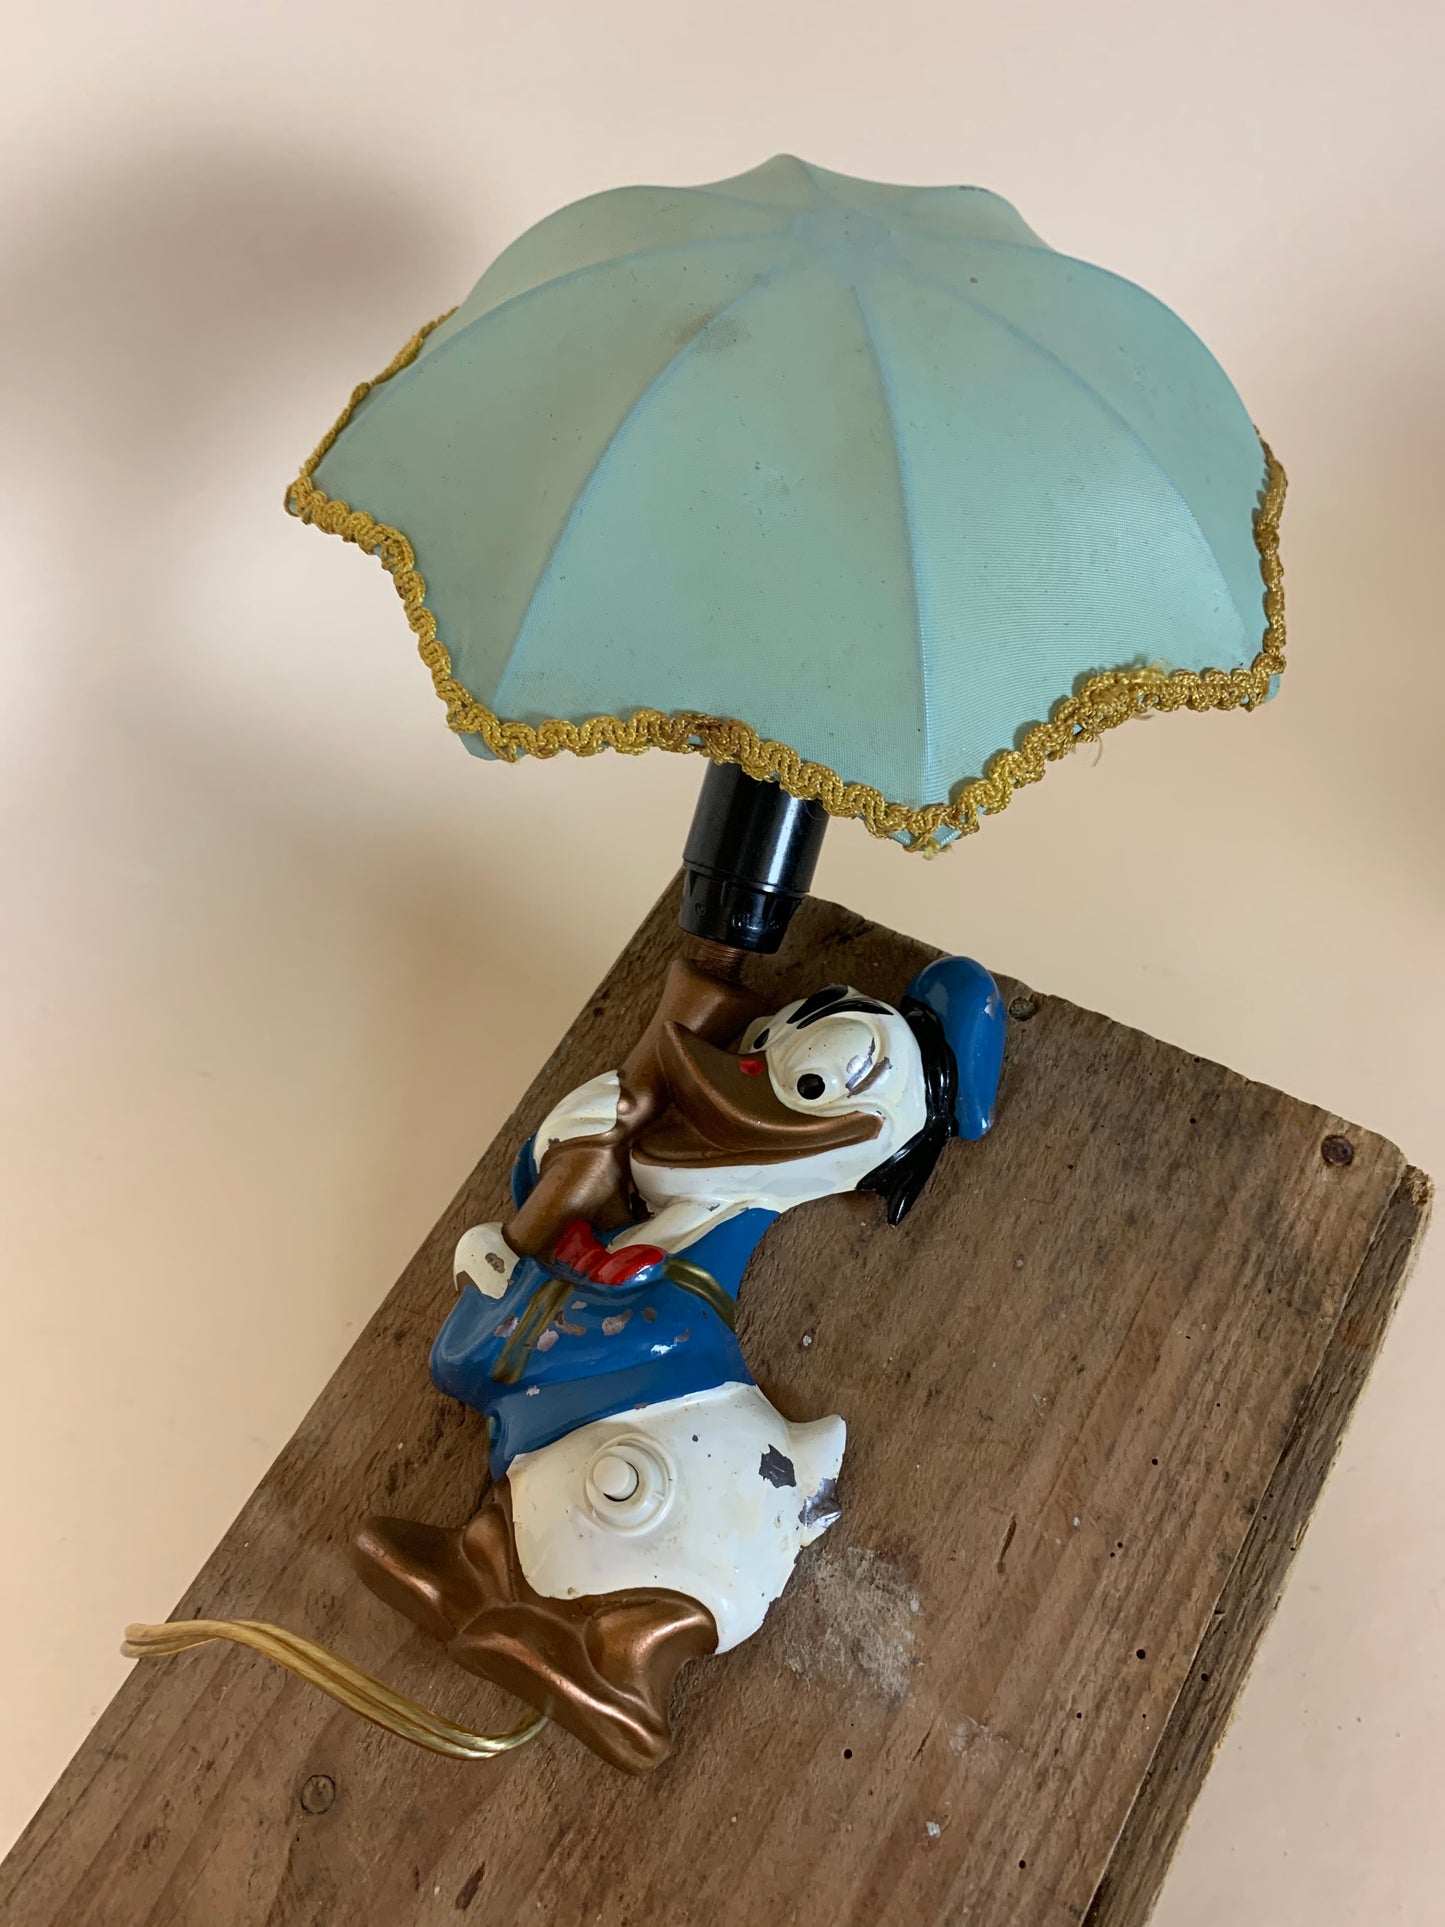 Anders Und Lampe mit Schirm